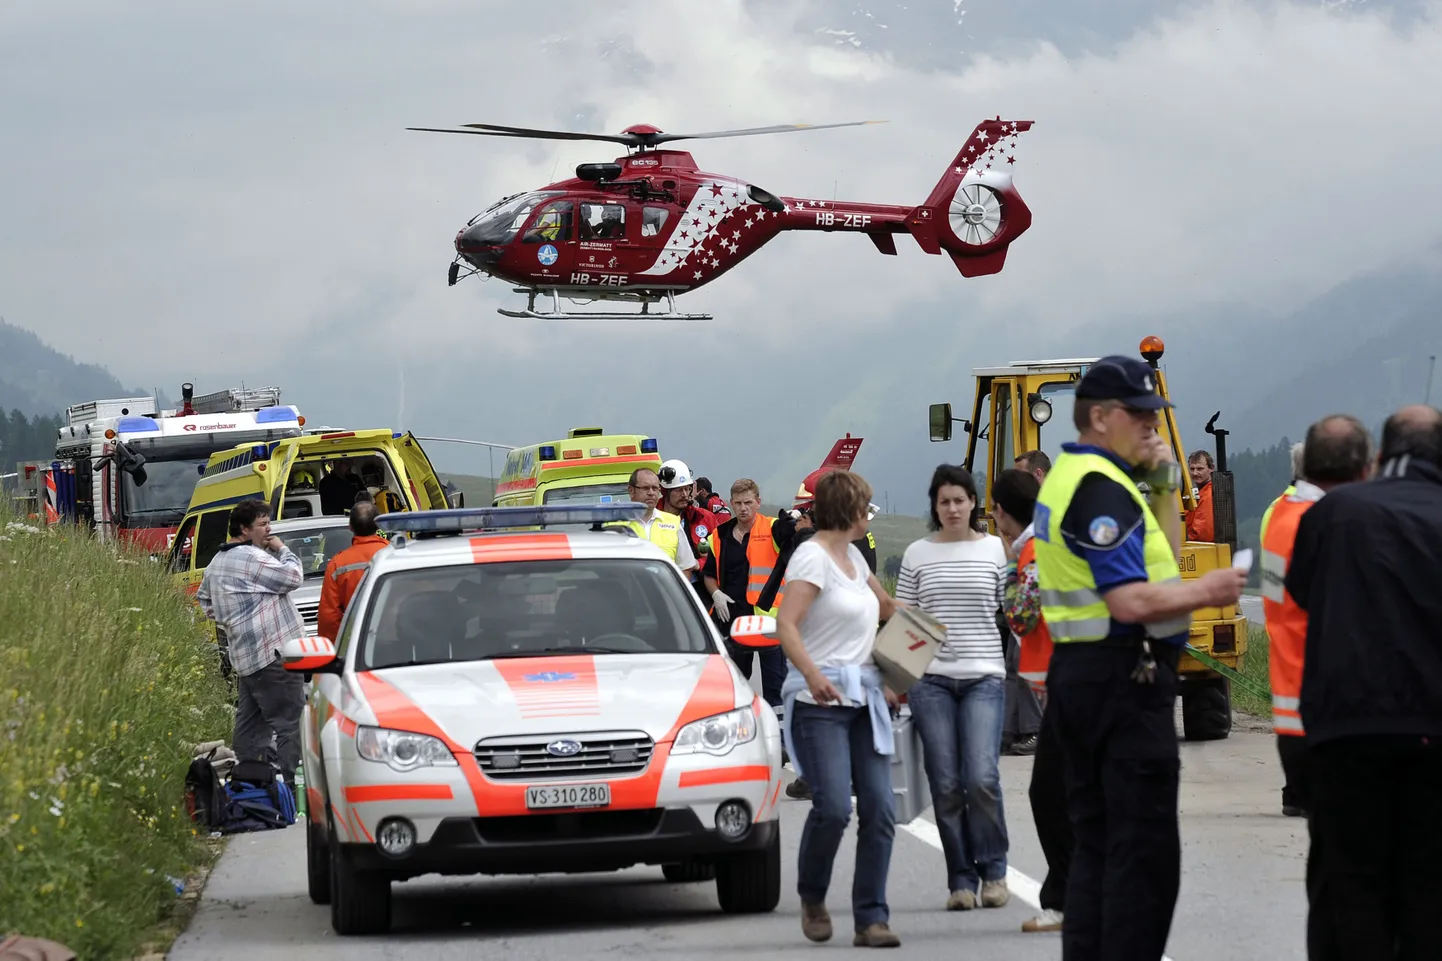 Šveitsi päästjad ja politsei. Pilt pole seotud tänase õnnetusega, vaid on tehtud juunikuise bussiõnnetuse ajal.